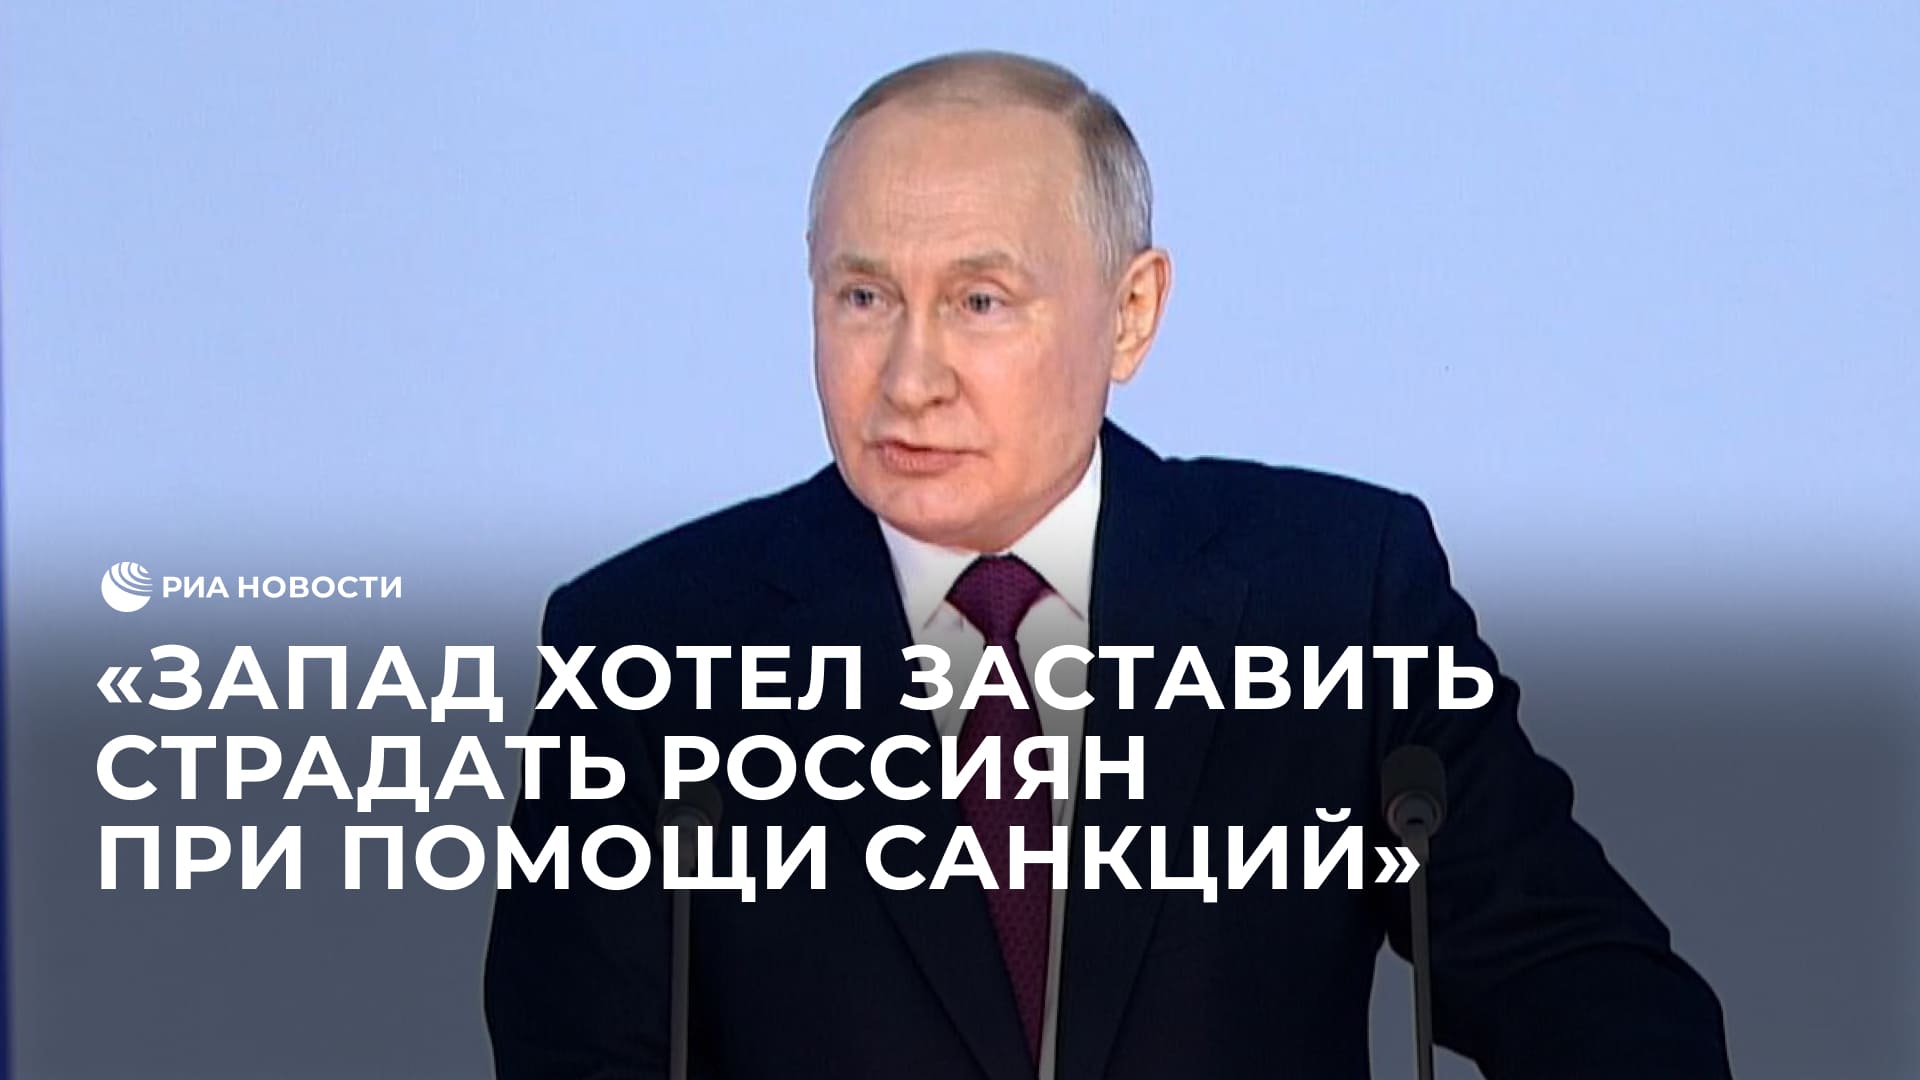 Запад хотел заставить страдать россиян при помощи санкций, заявил Путин